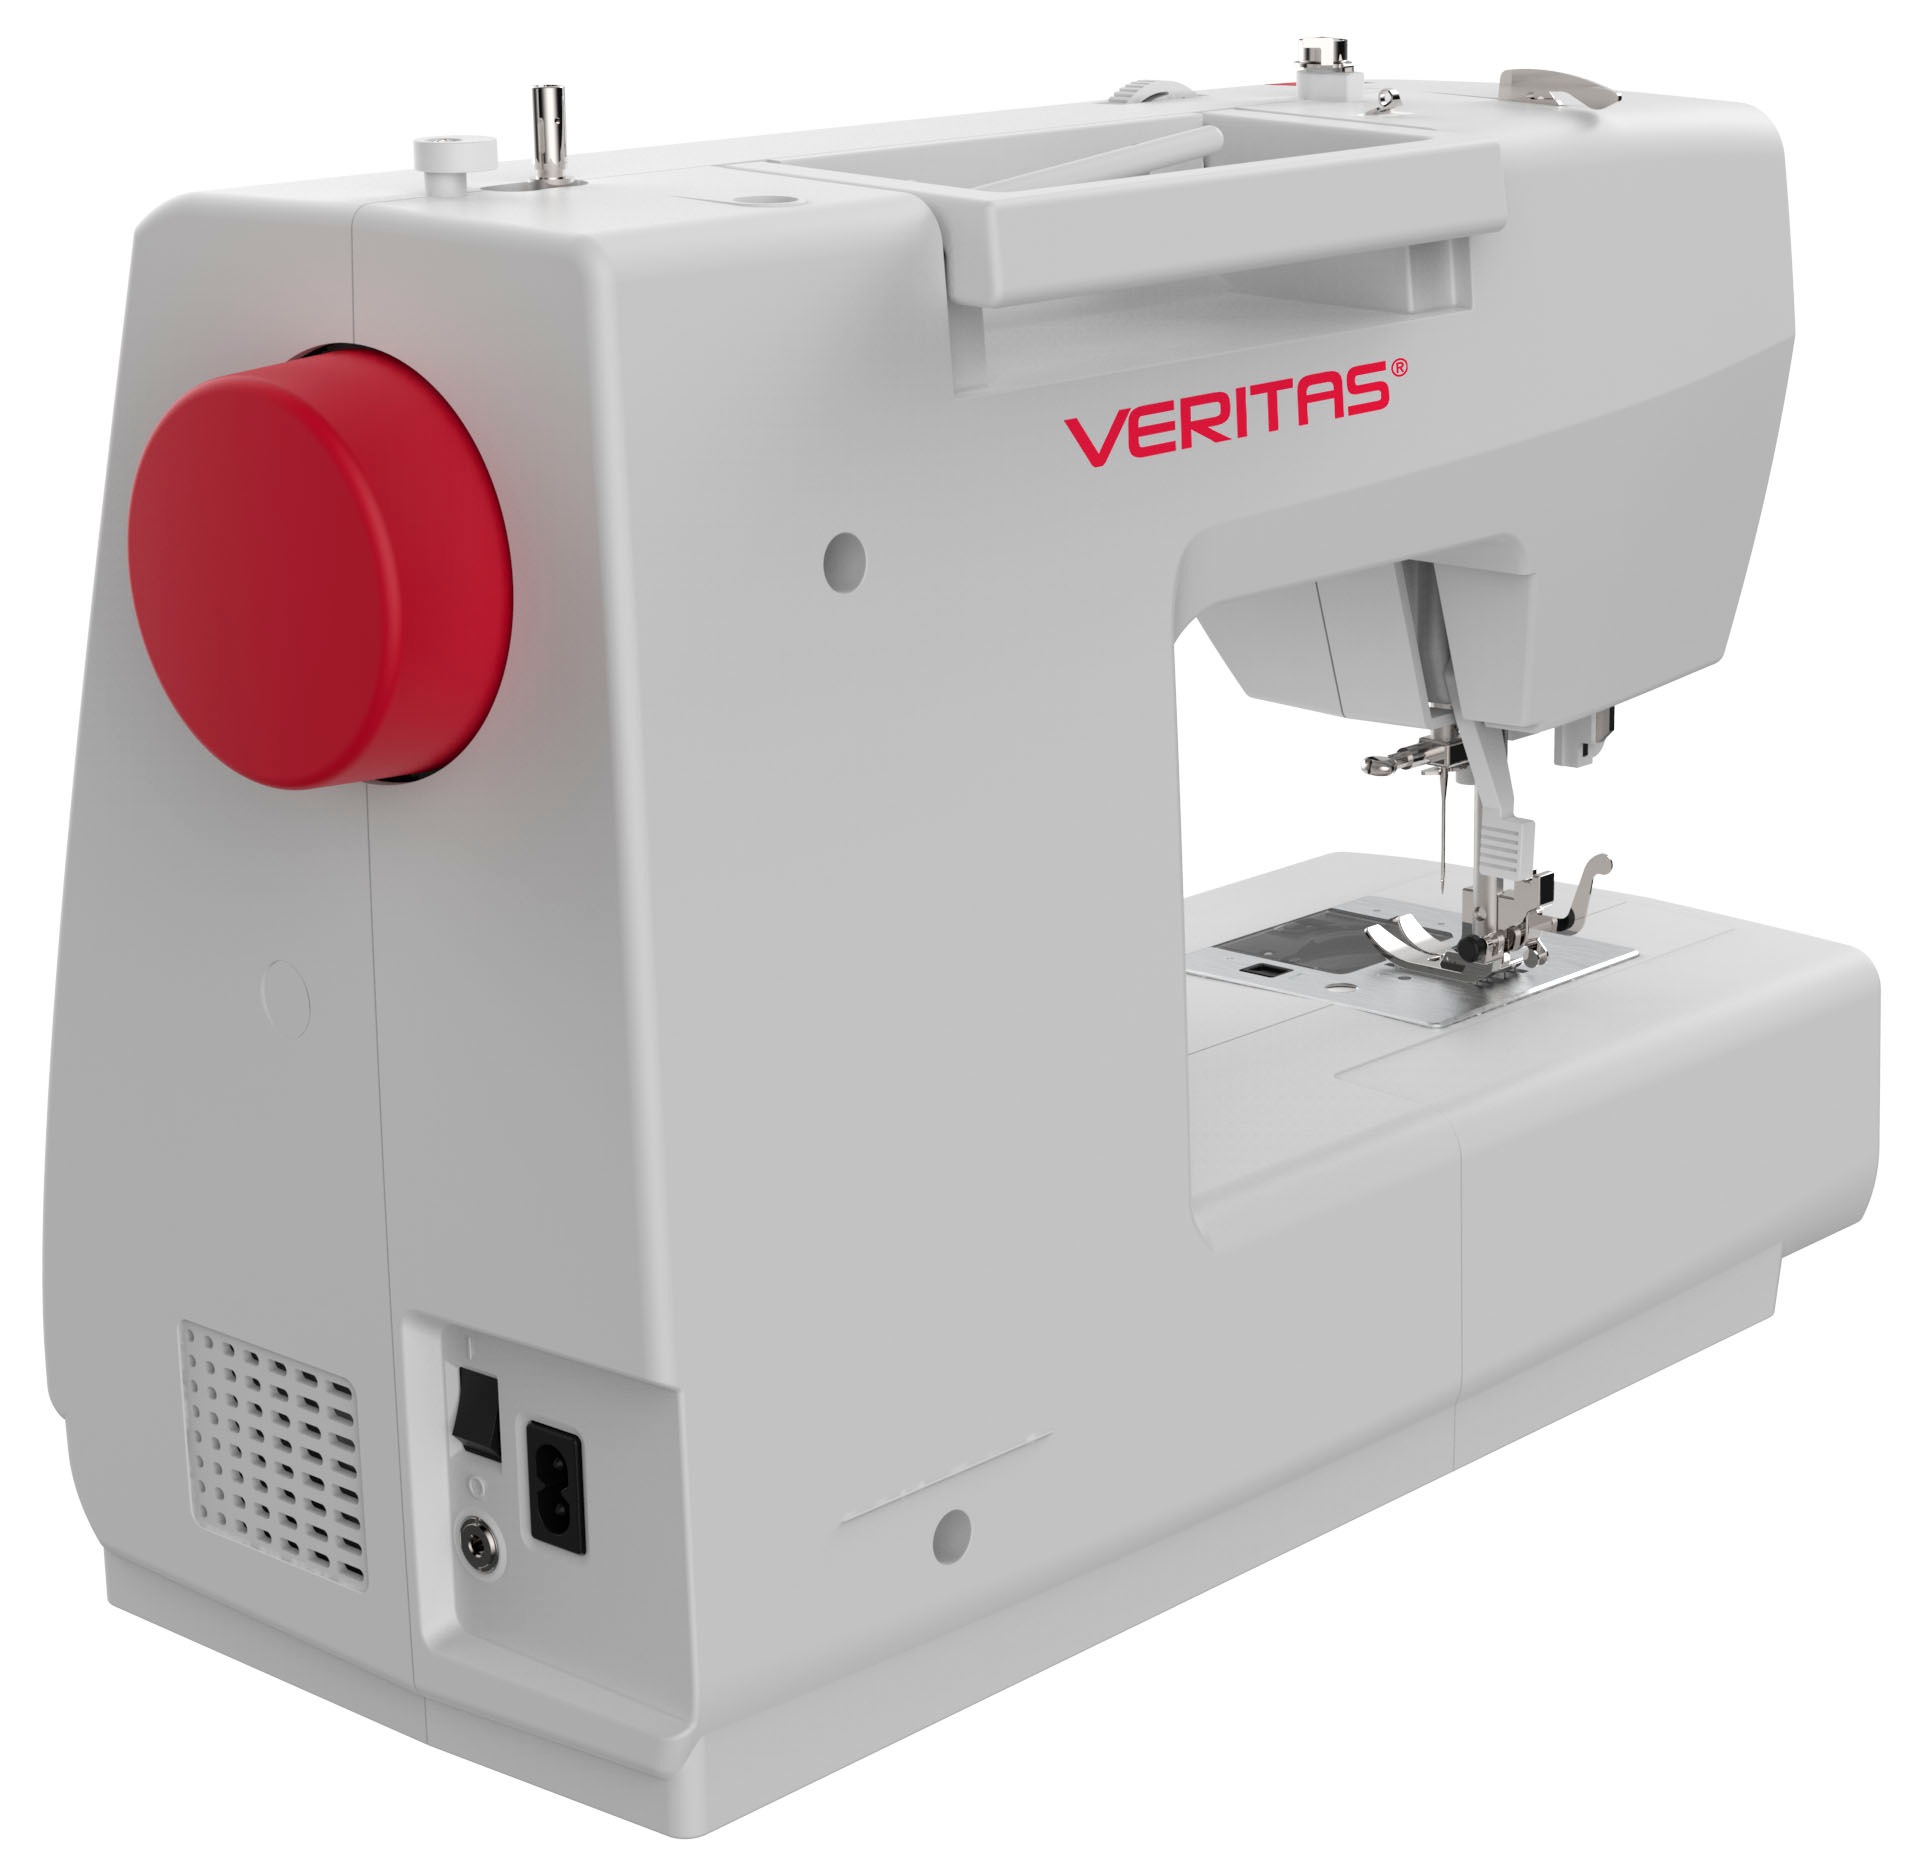 Veritas Computer-Nähmaschine »Veritas Claire«, 197 Programme, Modernste  Technologie für Näharbeiten online bei